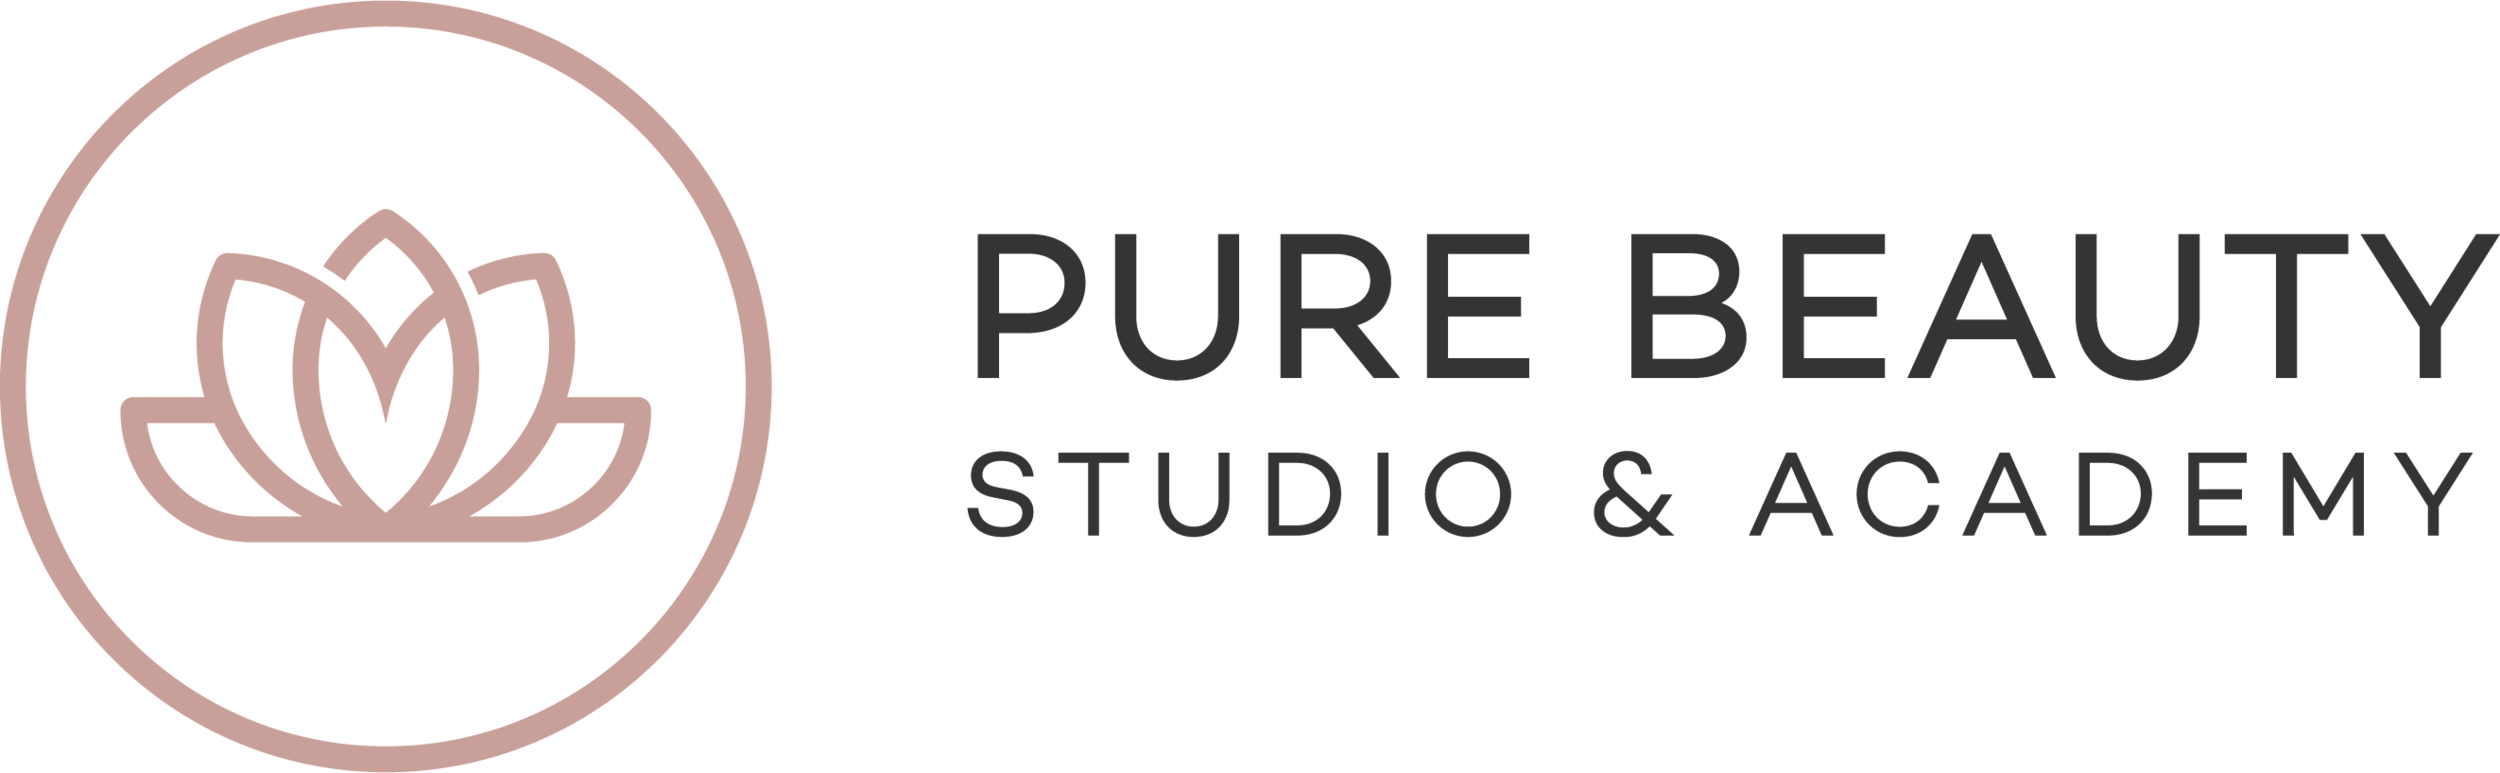 Pure Beauty Studio & Academy